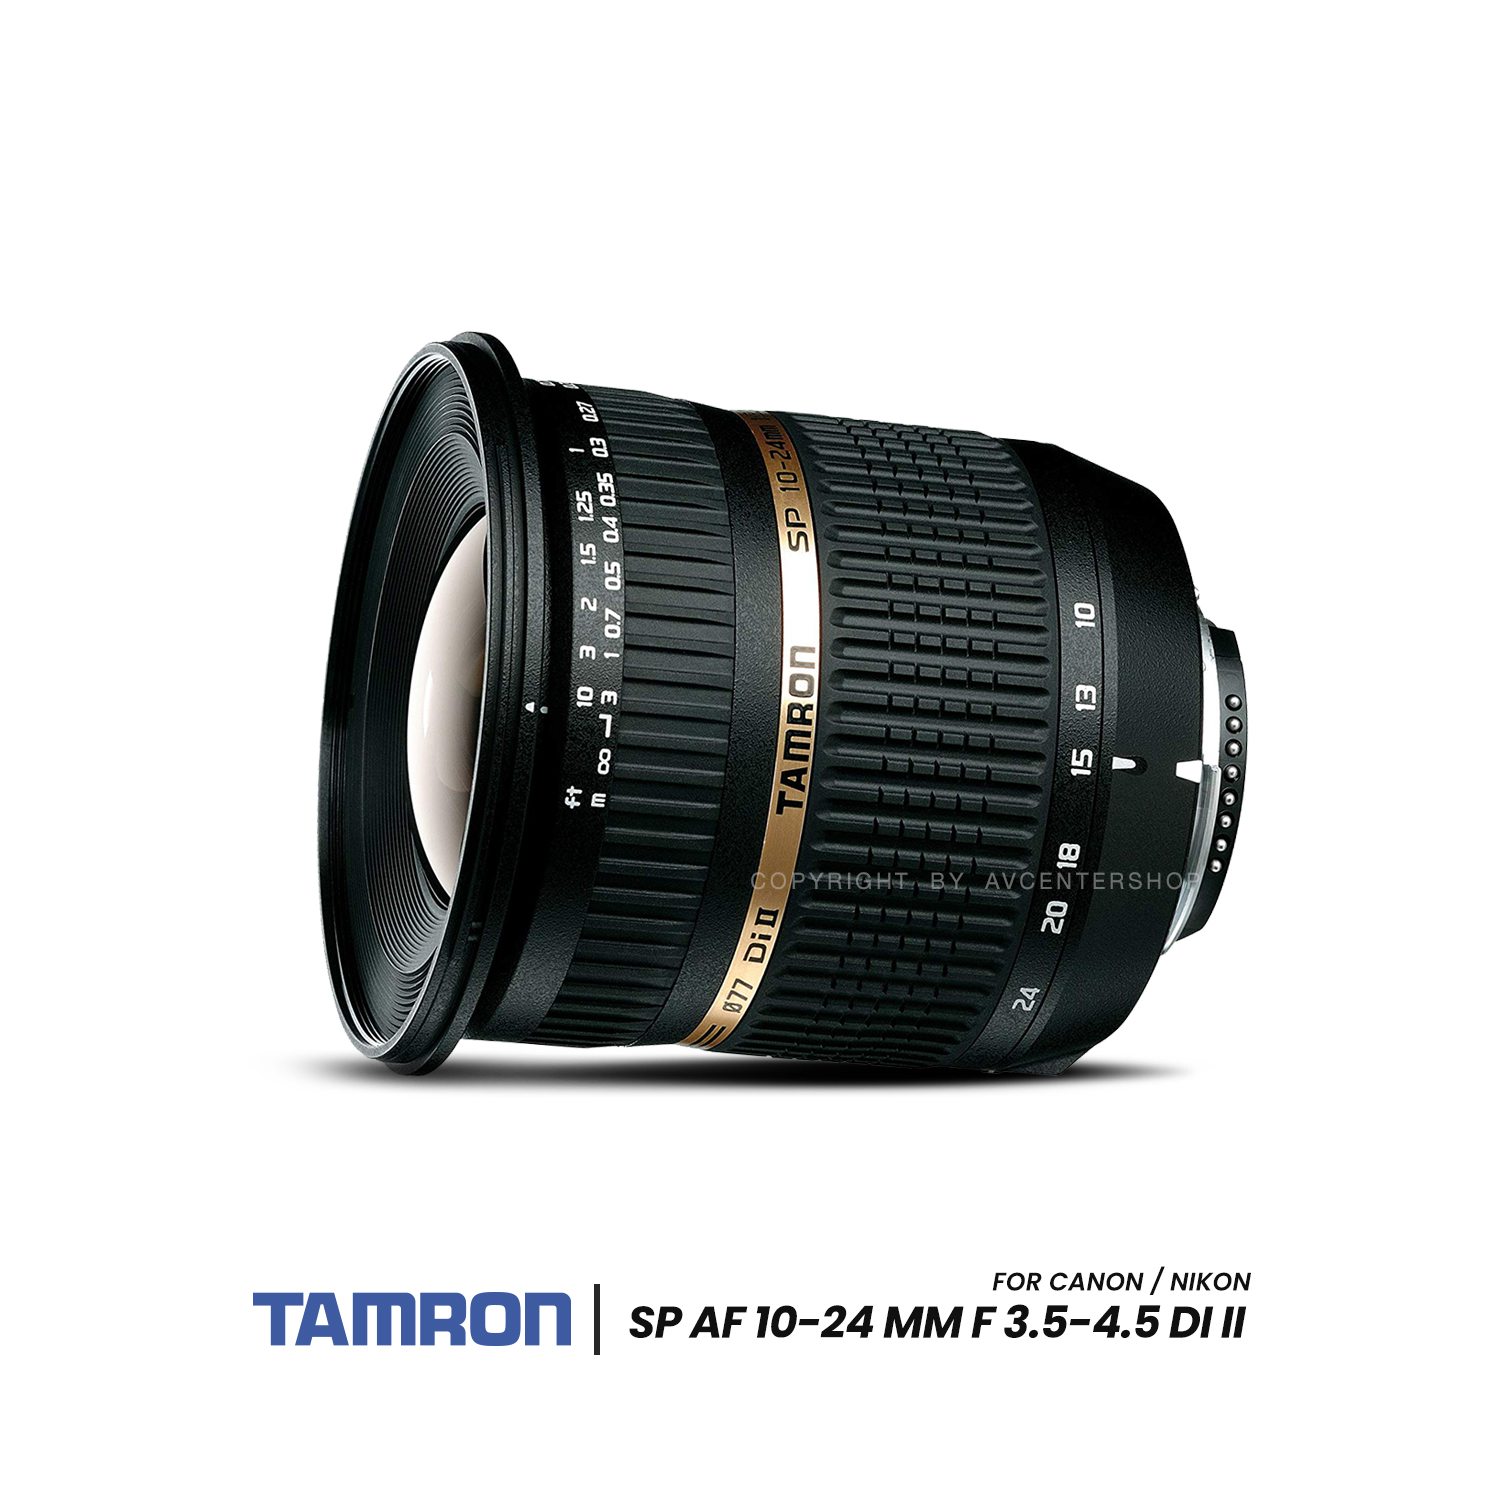 Tamron Lens SP AF 10-24 mm f/3.5-4.5 Di II